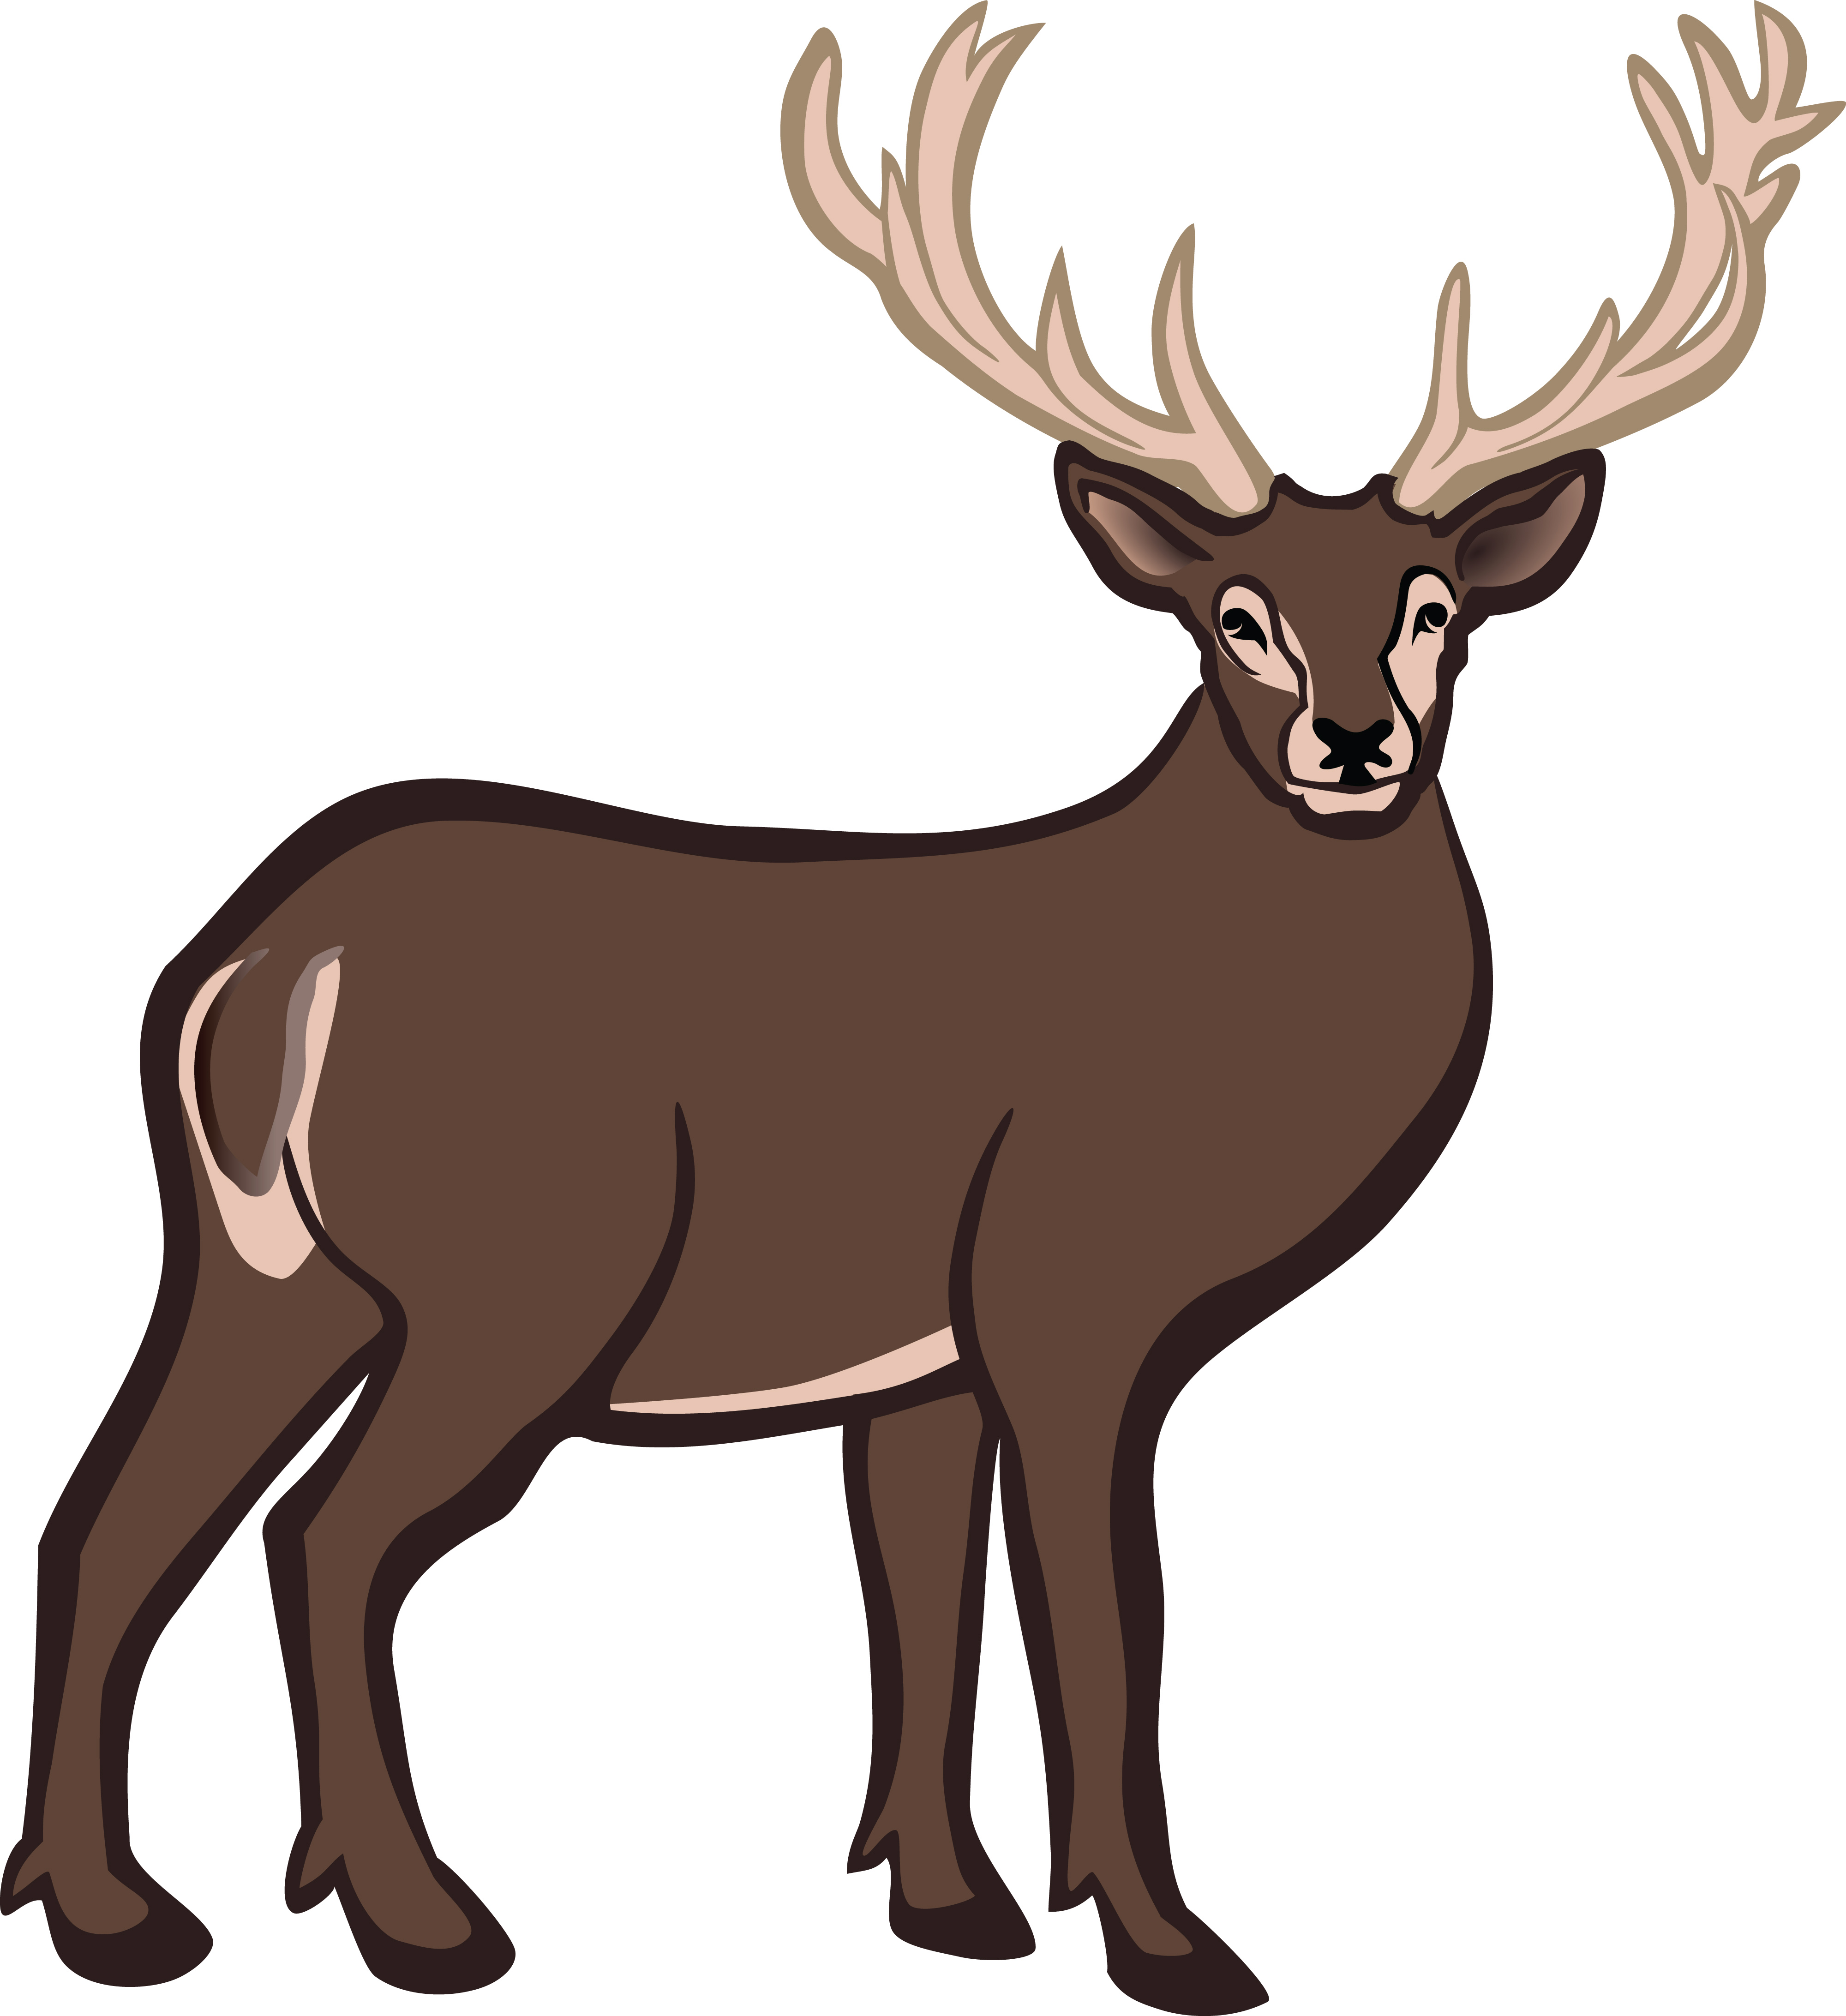 Free Clipart Of A buck deer